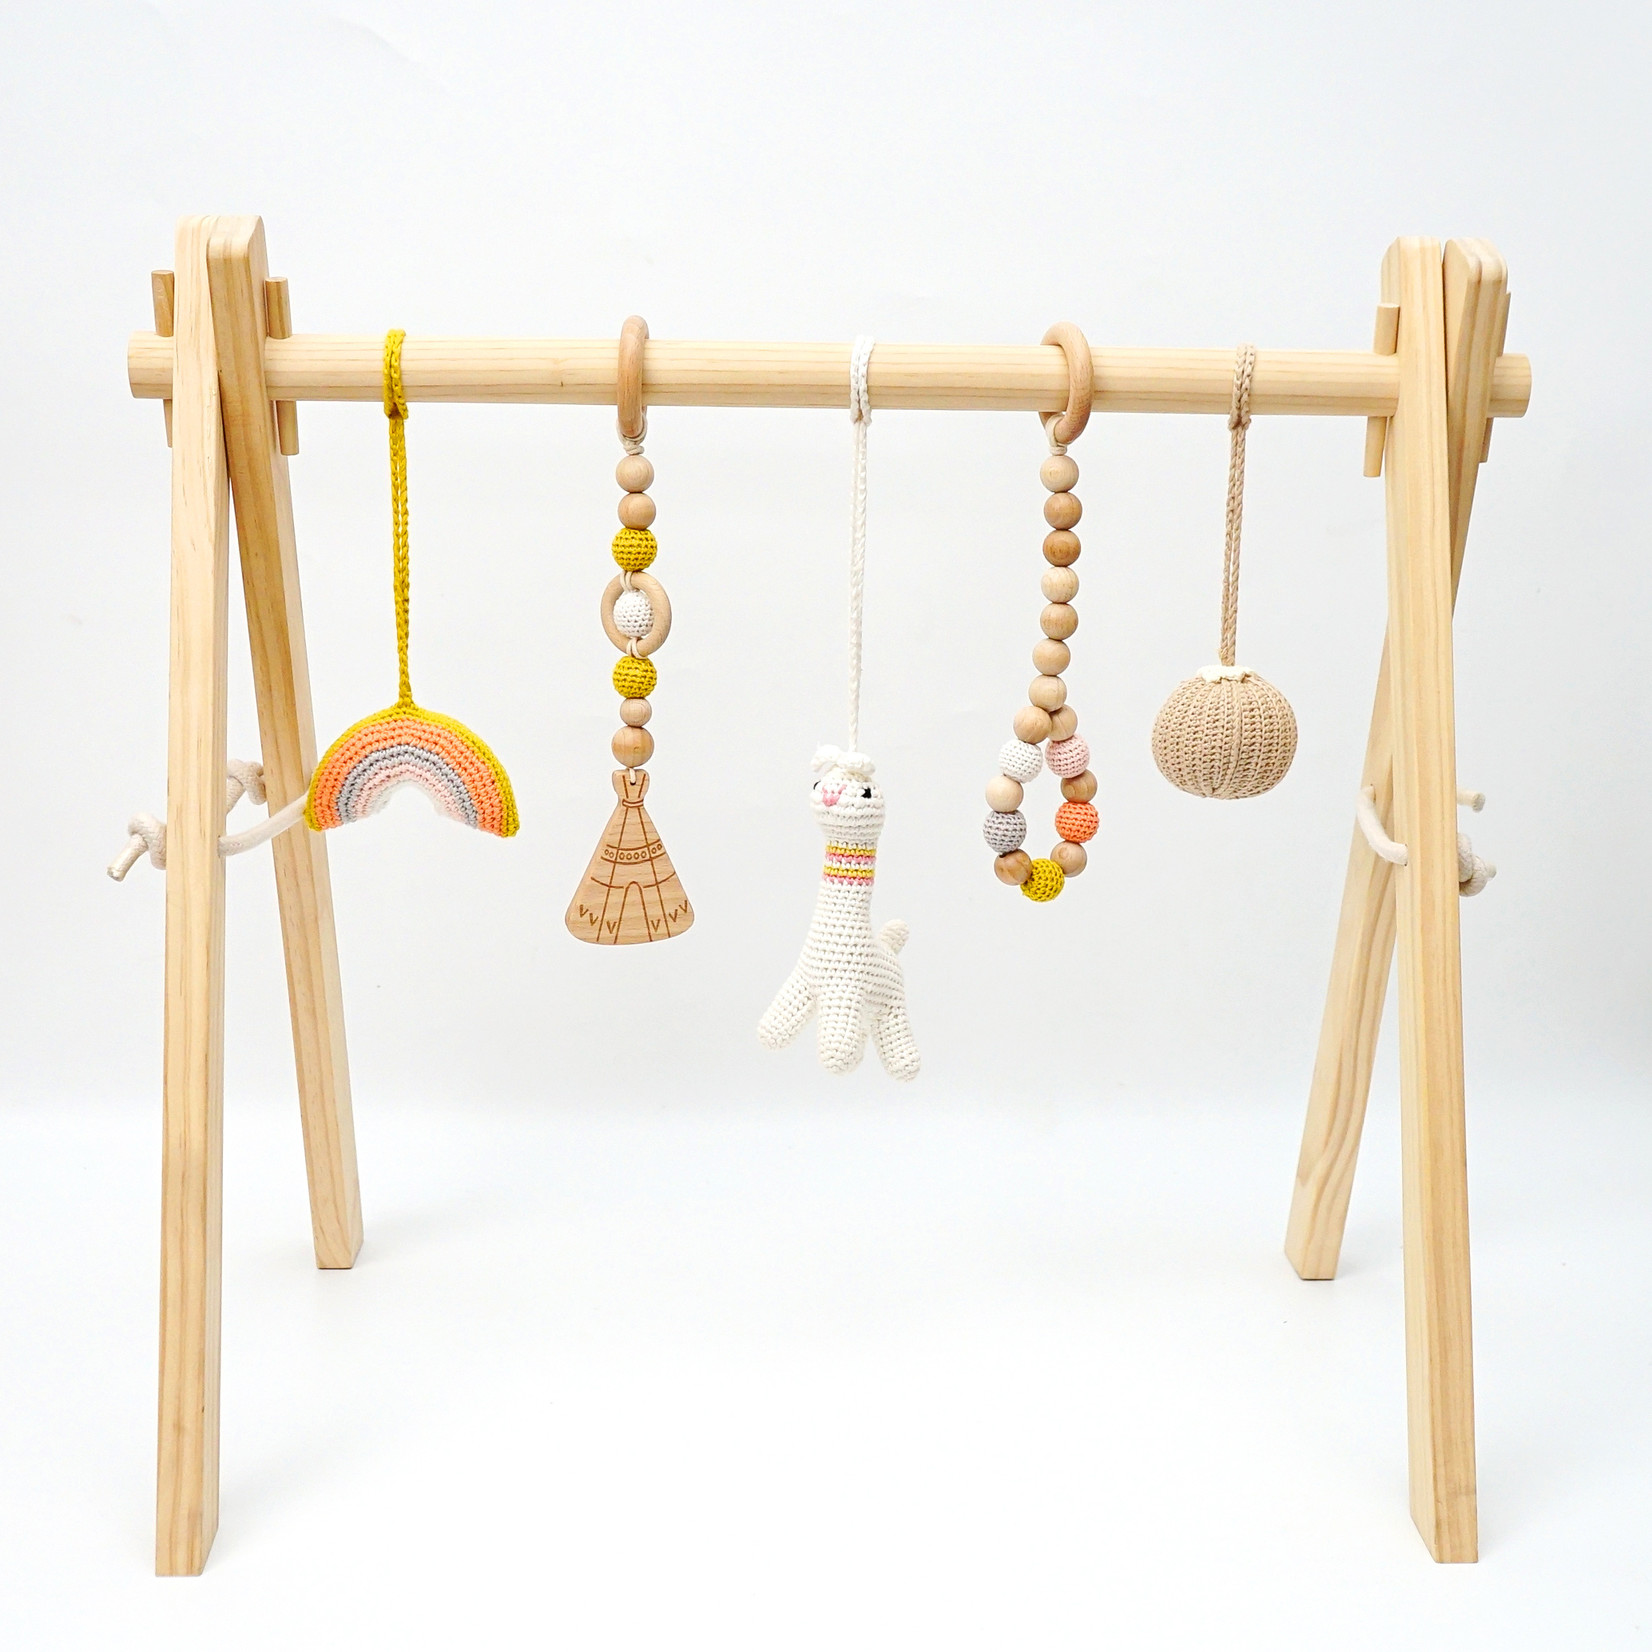 Louas Louas houten babygym met gehaakte en houten speeltjes lama editie